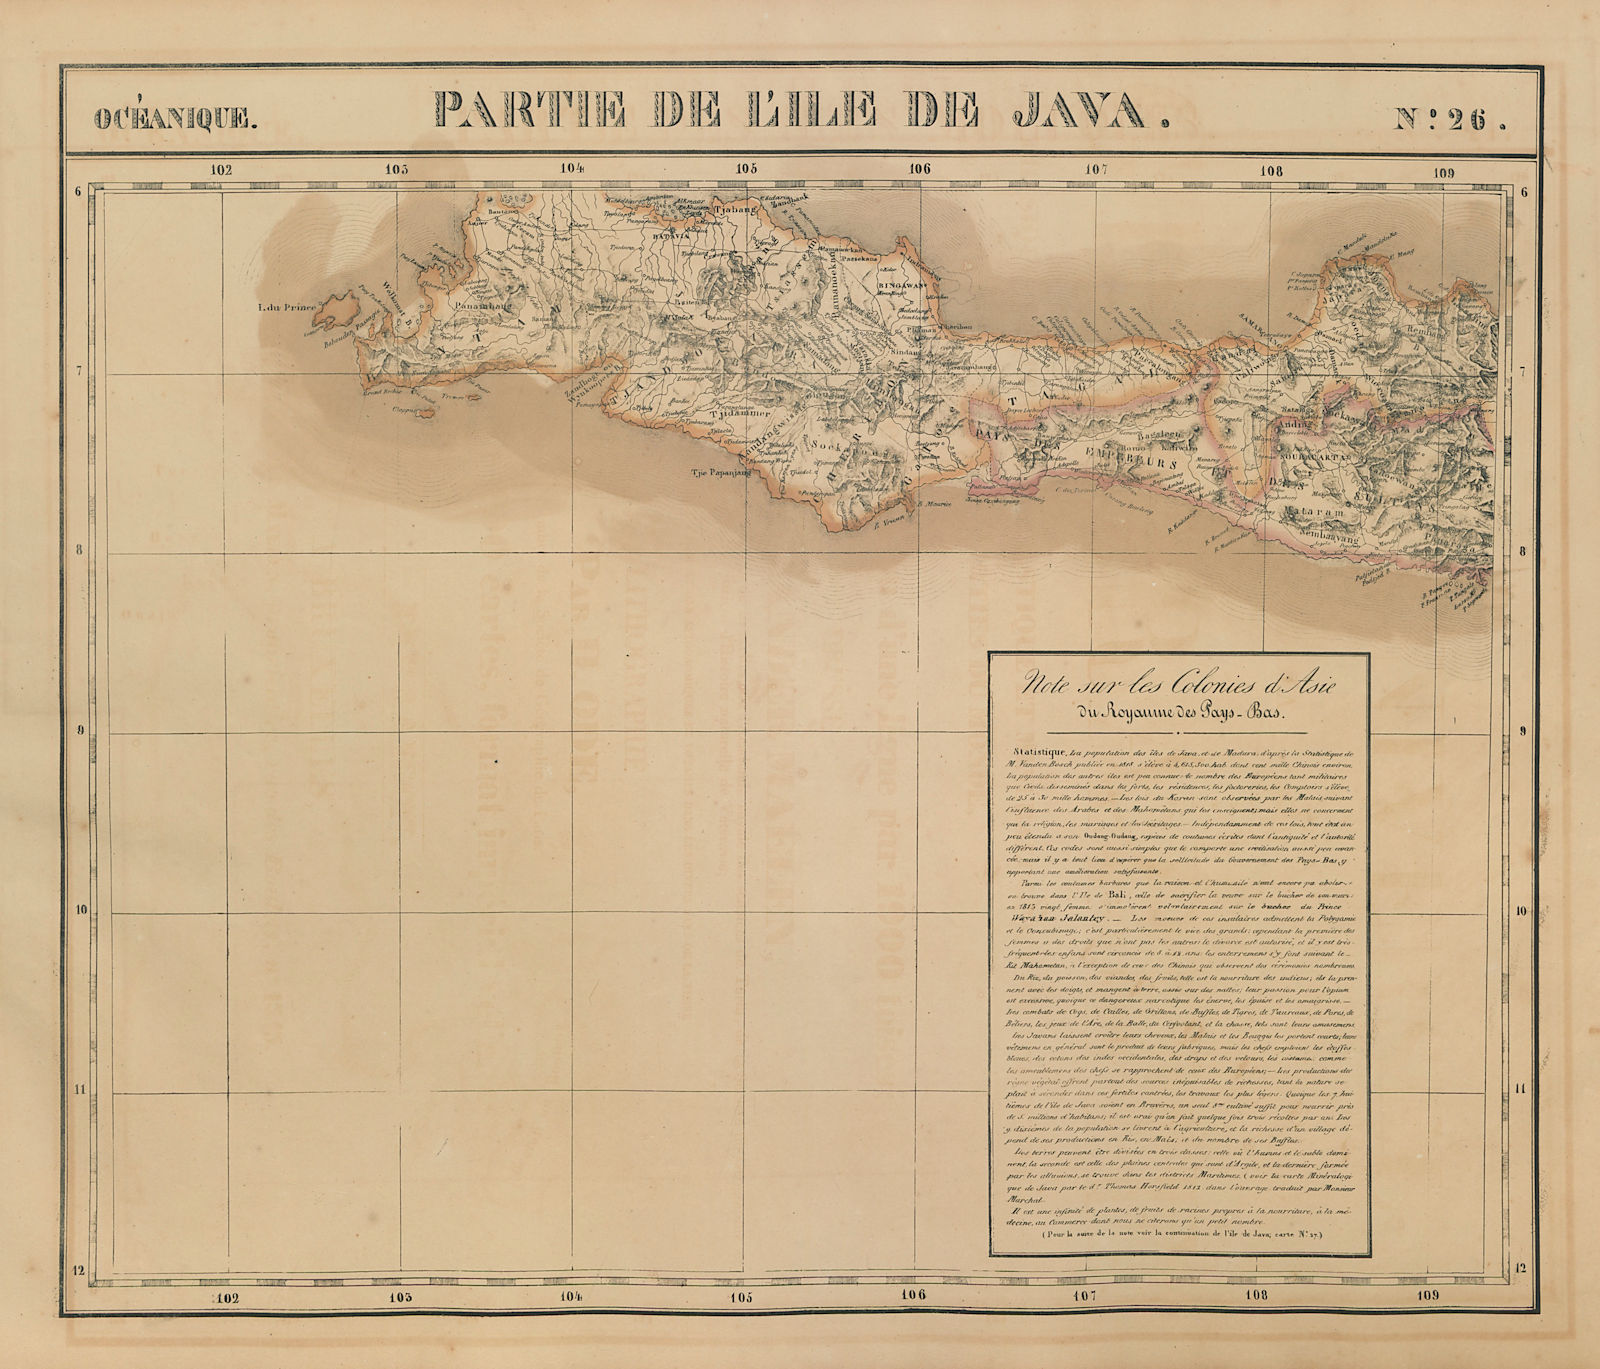 Associate Product Océanique. Partie de l'ile de Java #26 West Java Indonesia VANDERMAELEN 1827 map